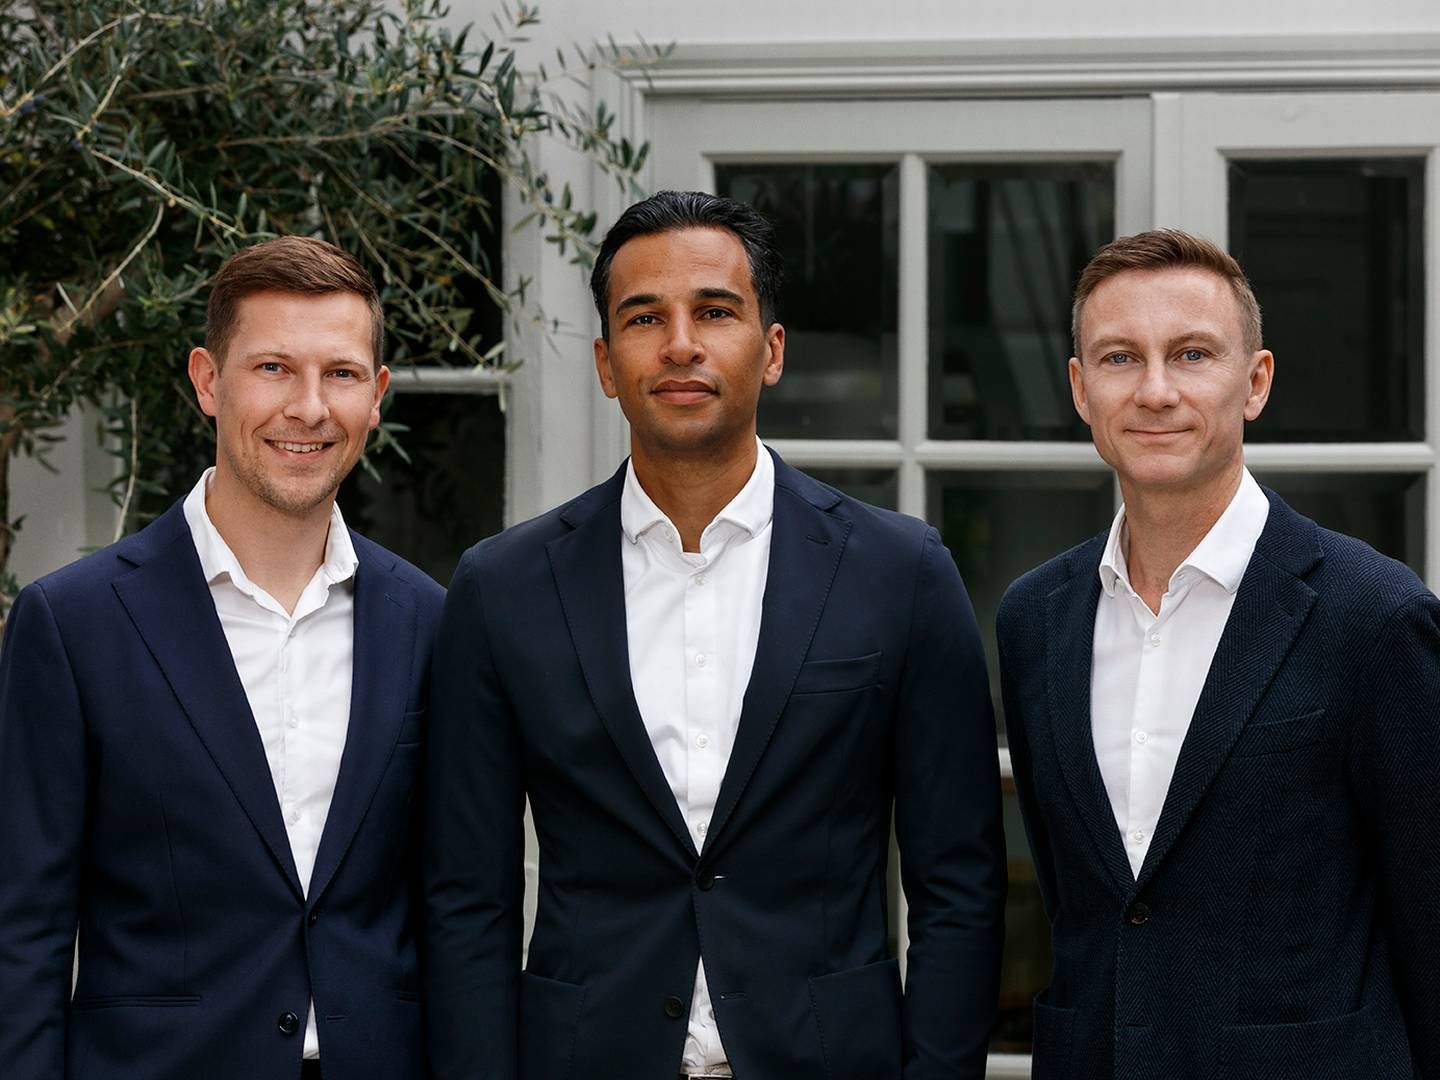 Fra venstre: Andreas Bagunck, ny udviklingsdirektør hos Innovater, Mahad Farah, ny direktør for Innovater Melius og Peter Søgaard, kommende adm. direktør hos Innovater. | Photo: PR / Innovater